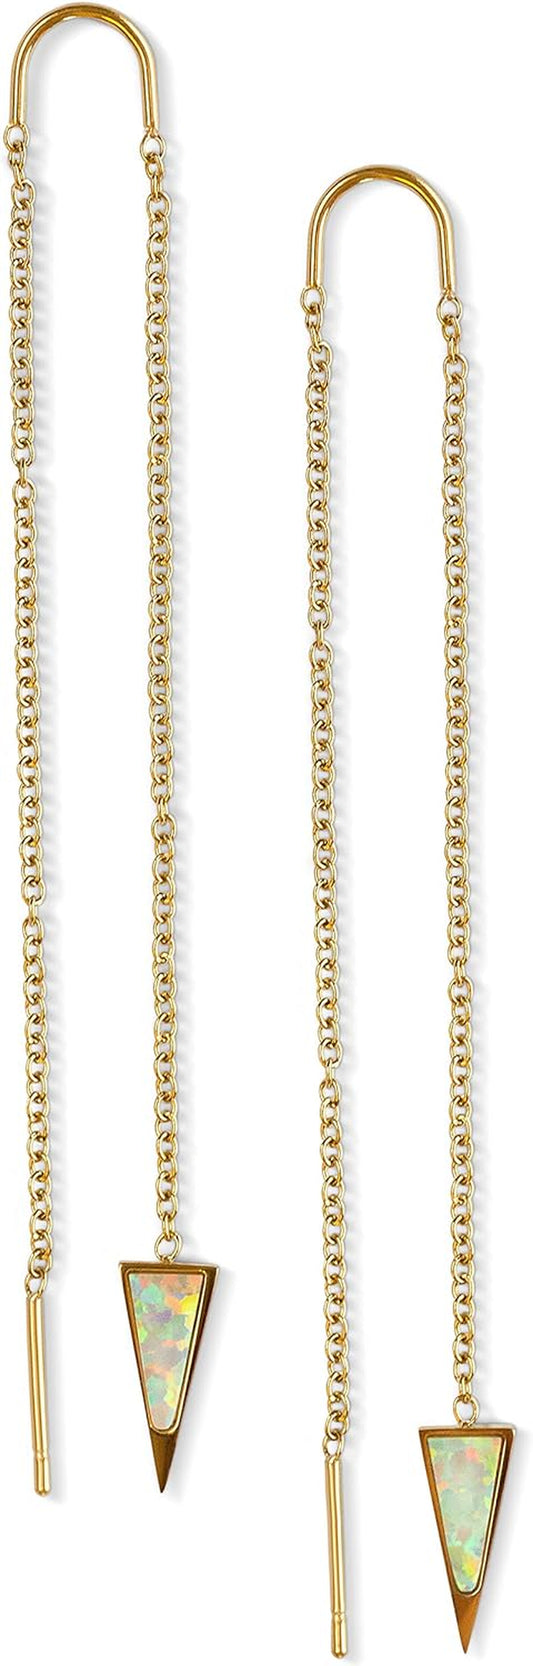 14K Gold Chain Earrings for Women, Gold Threader Earrings for Women | Double Piercing Earrings, | Gold Drop Earrings, Dangle Earrings, Long Earrings for Women, Travel Accessories for Women, Spring Earrings